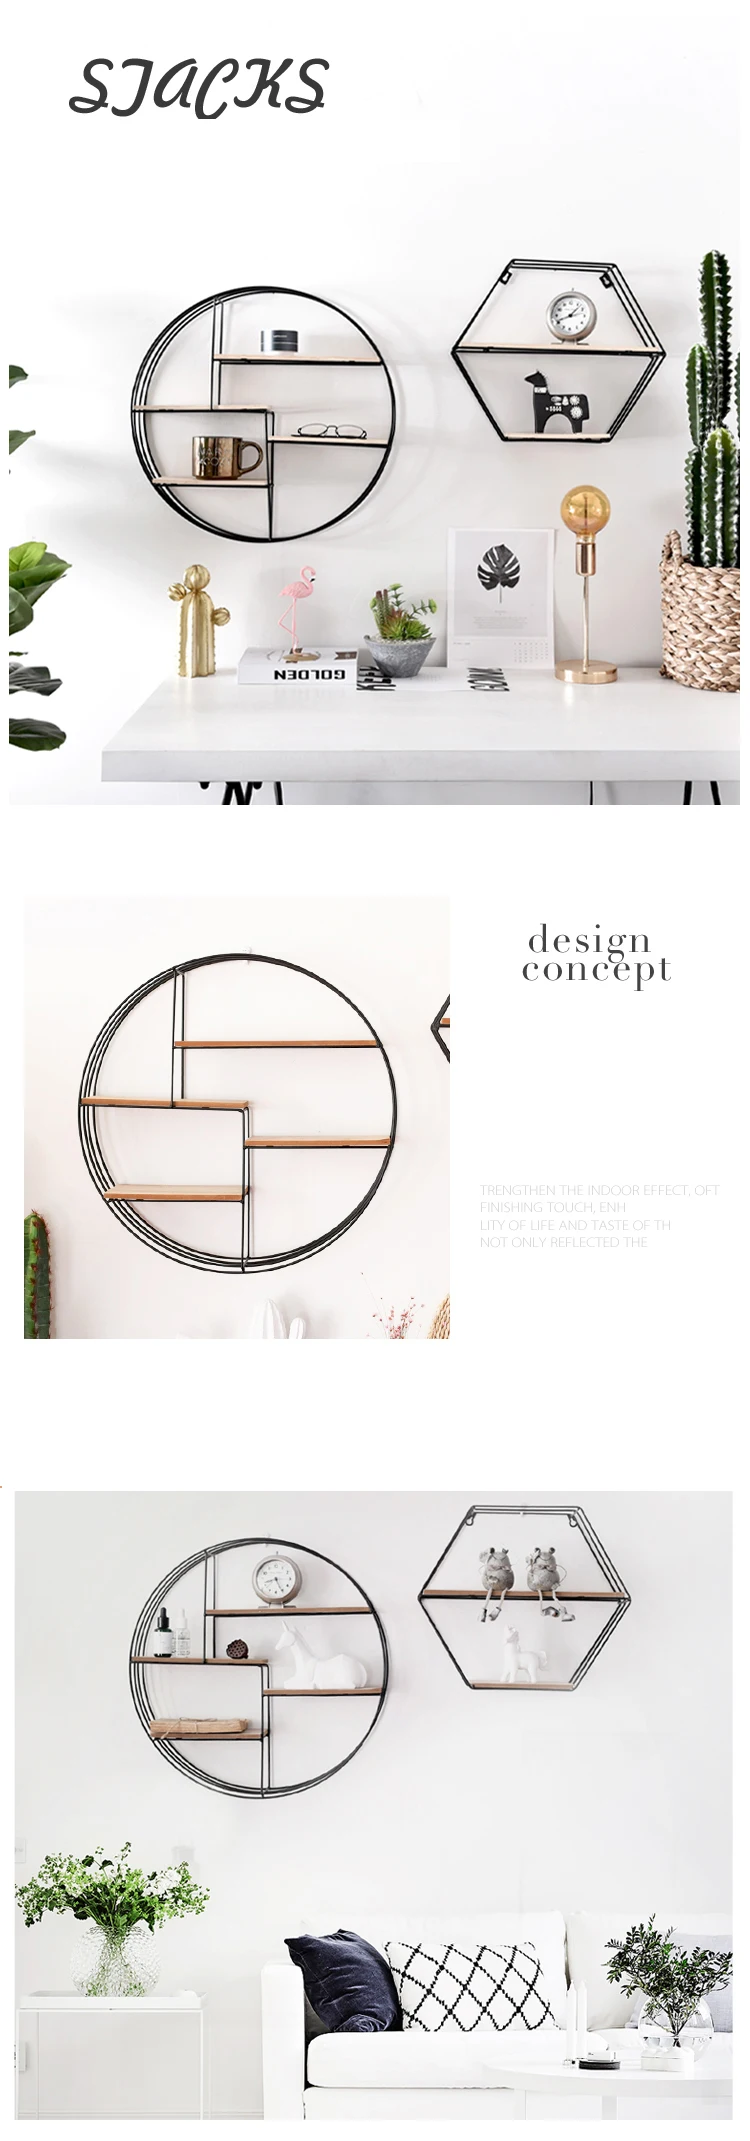 Ins hot balck американский стиль скандинавские стены решетка-держатель металлический геометрический круглый современный дизайнерская вешалка Коридорная рейка bookrack